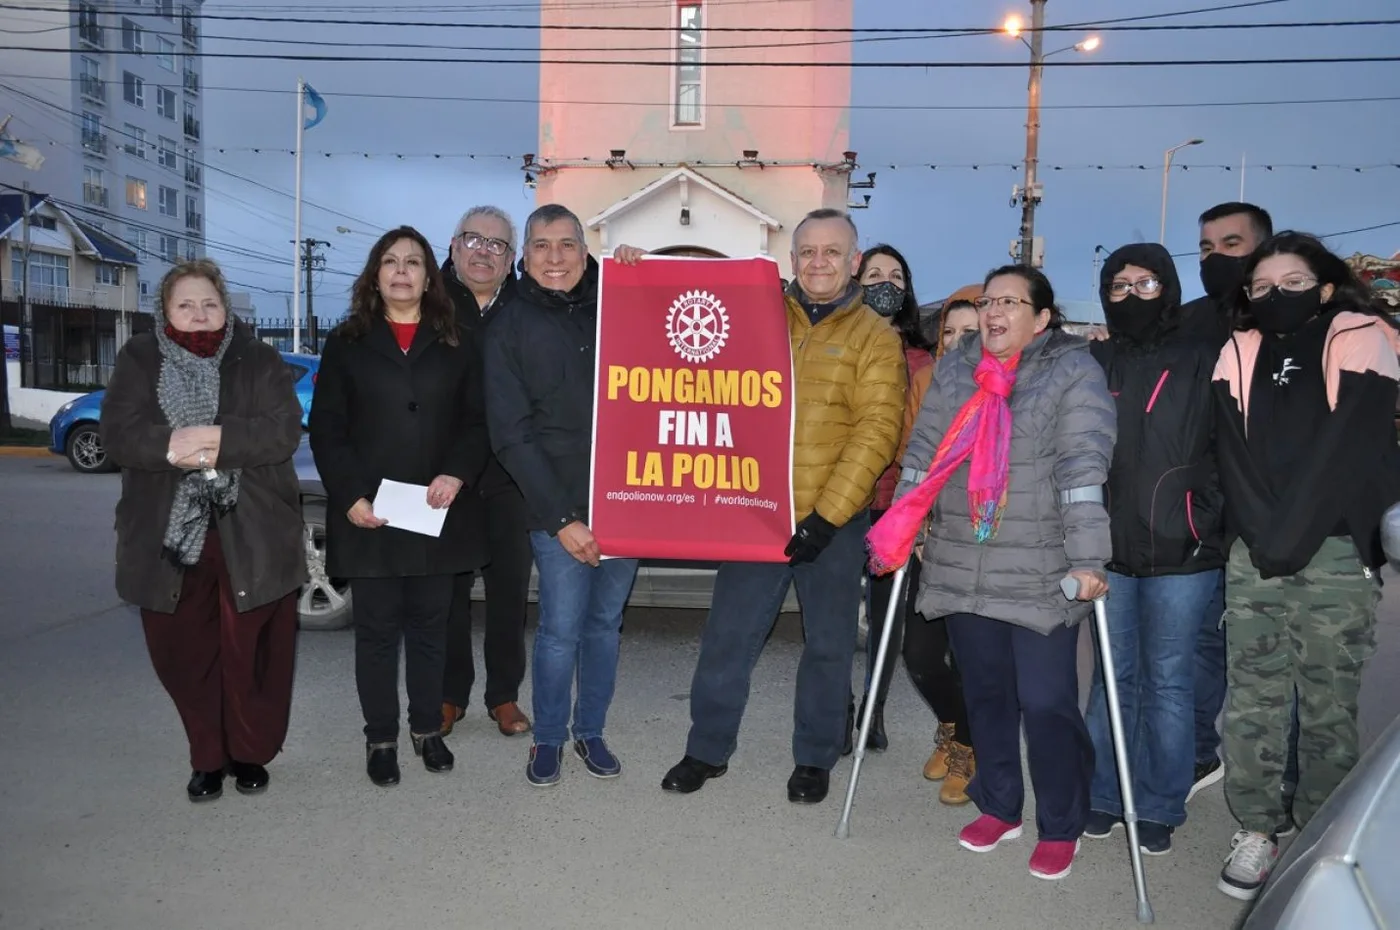 Integrantes del Rotary club Isla Grande frente a la torre iluminada de rojo con la consigna "Pongamos fin a la polio".